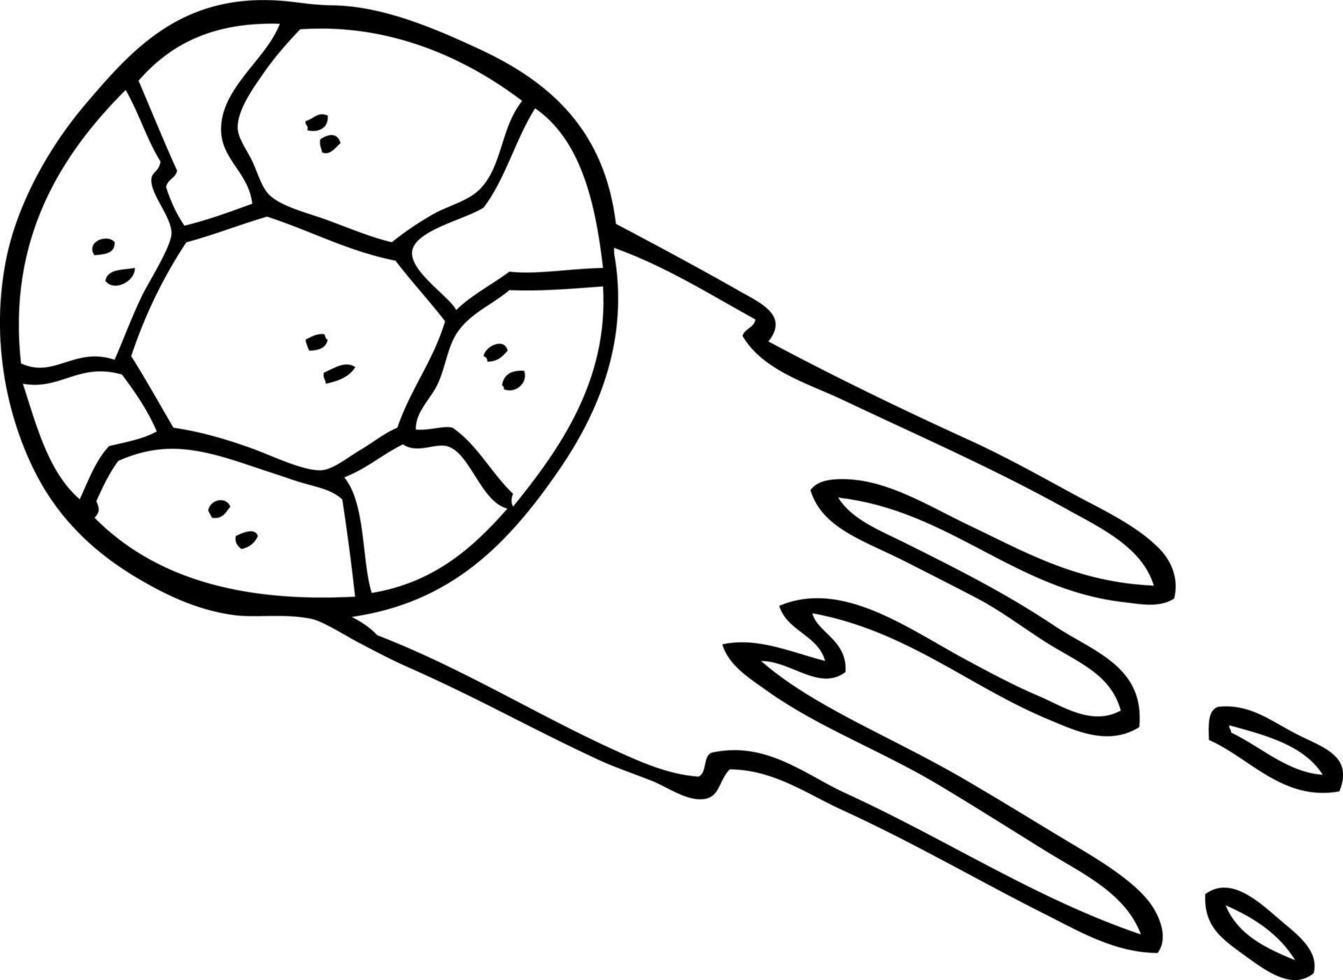 Schwarz-Weiß-Cartoon-Fußball vektor